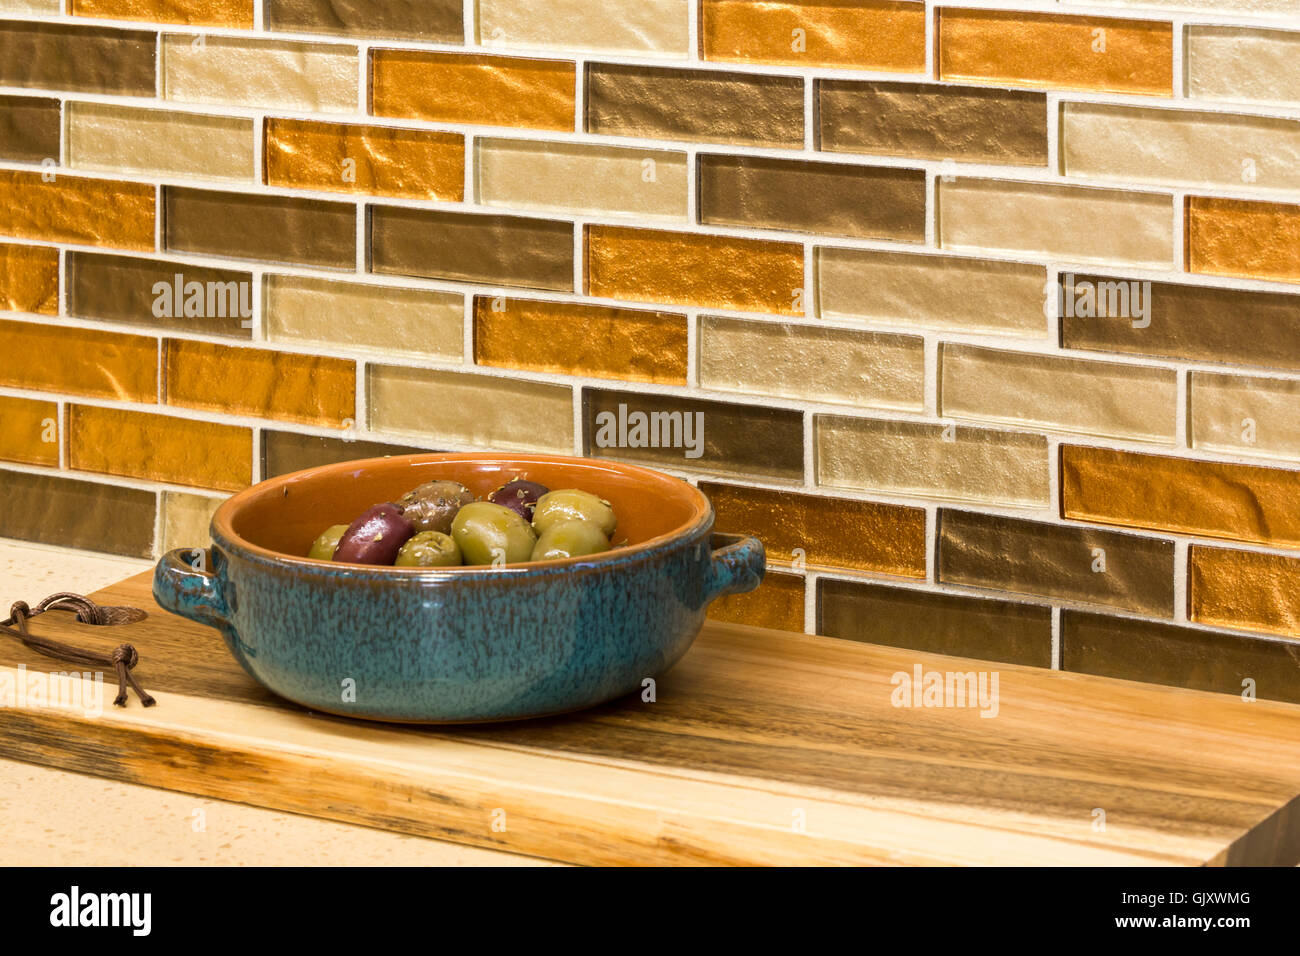 Accueil cuisine intérieur détail. Hors-d'olives dans un plat de service en céramique sur comptoir avec dosseret carreaux de mosaïque de verre. Banque D'Images